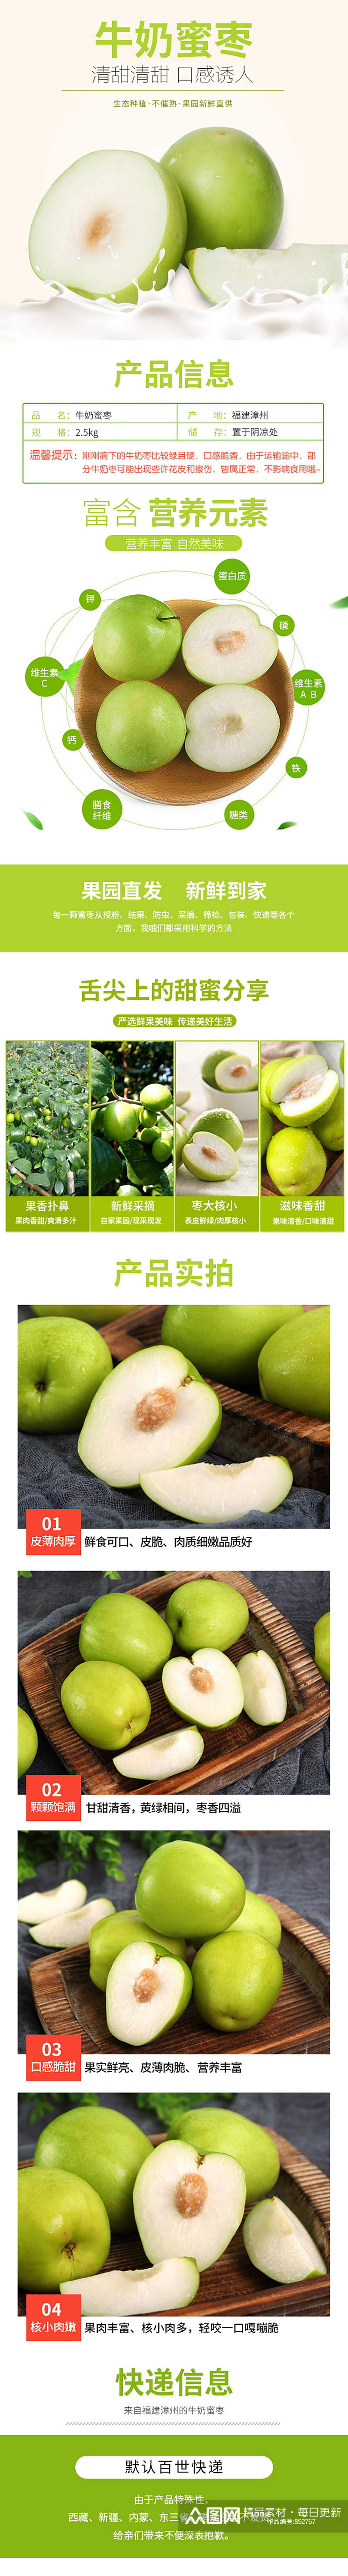 台湾进口新鲜水果牛奶蜜枣青枣脆详情页素材